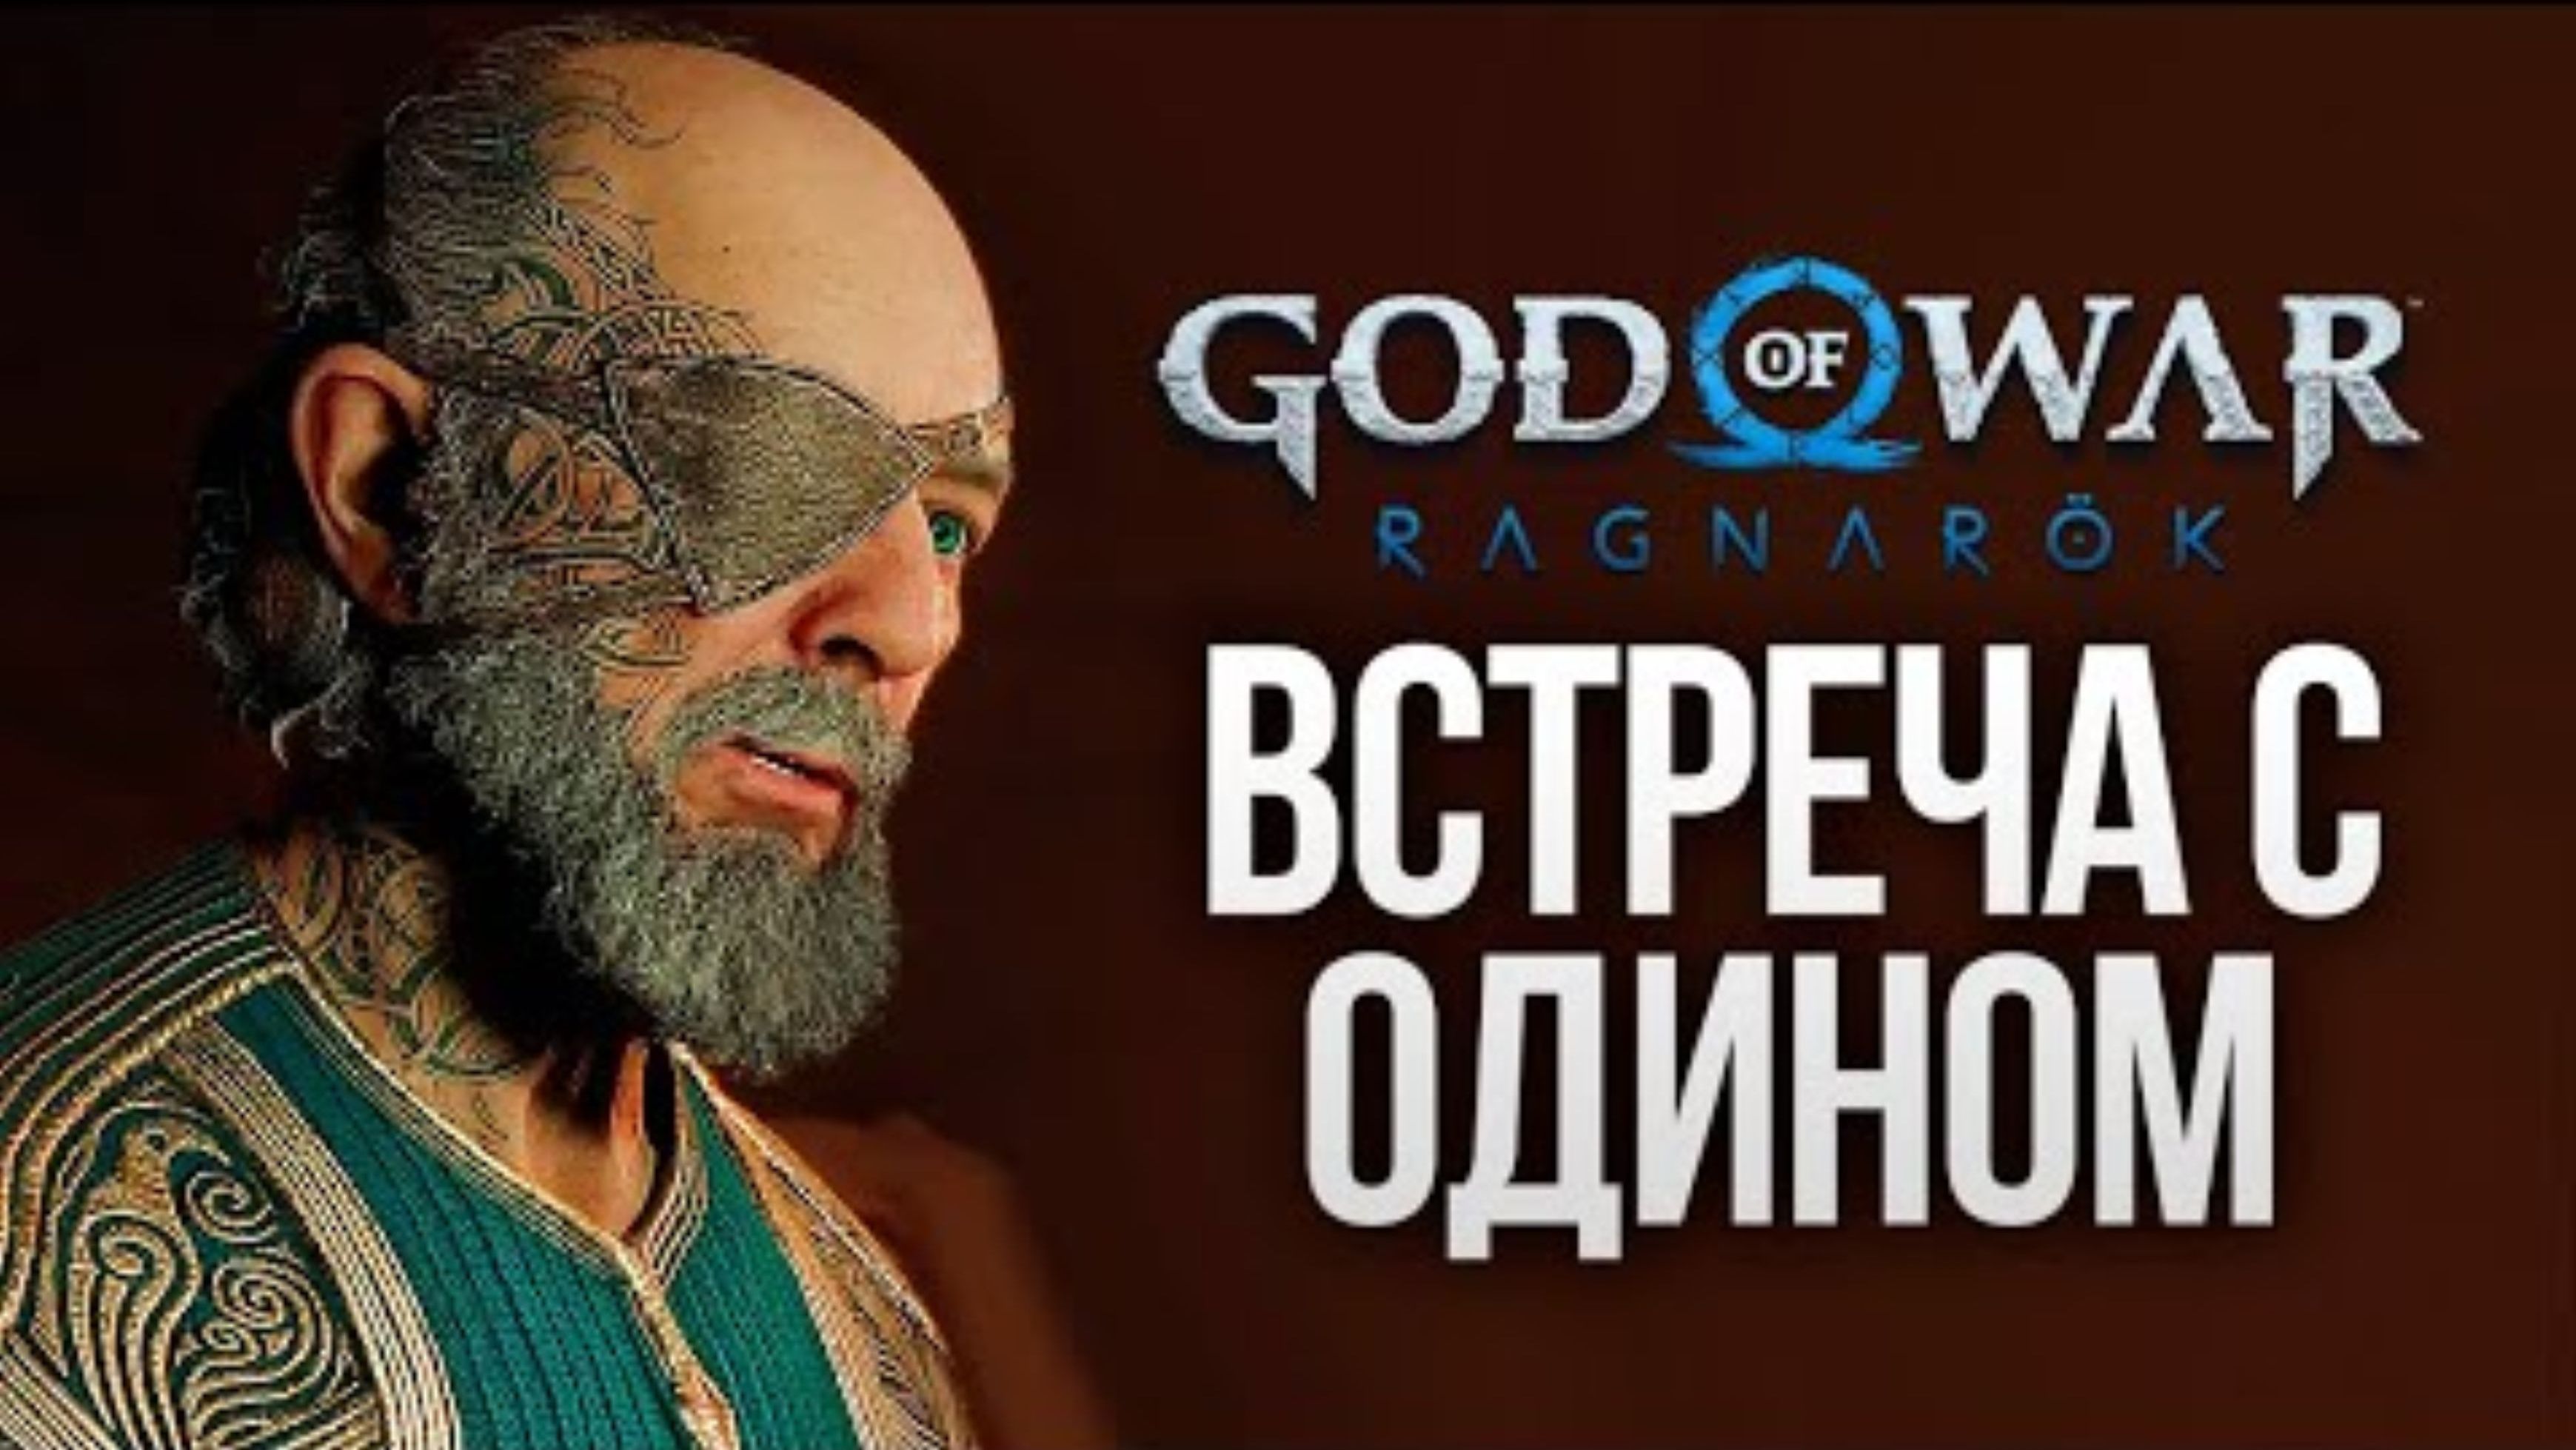 ВСТРЕЧА С ОДИНОМ - God of War_ Ragnarok #14